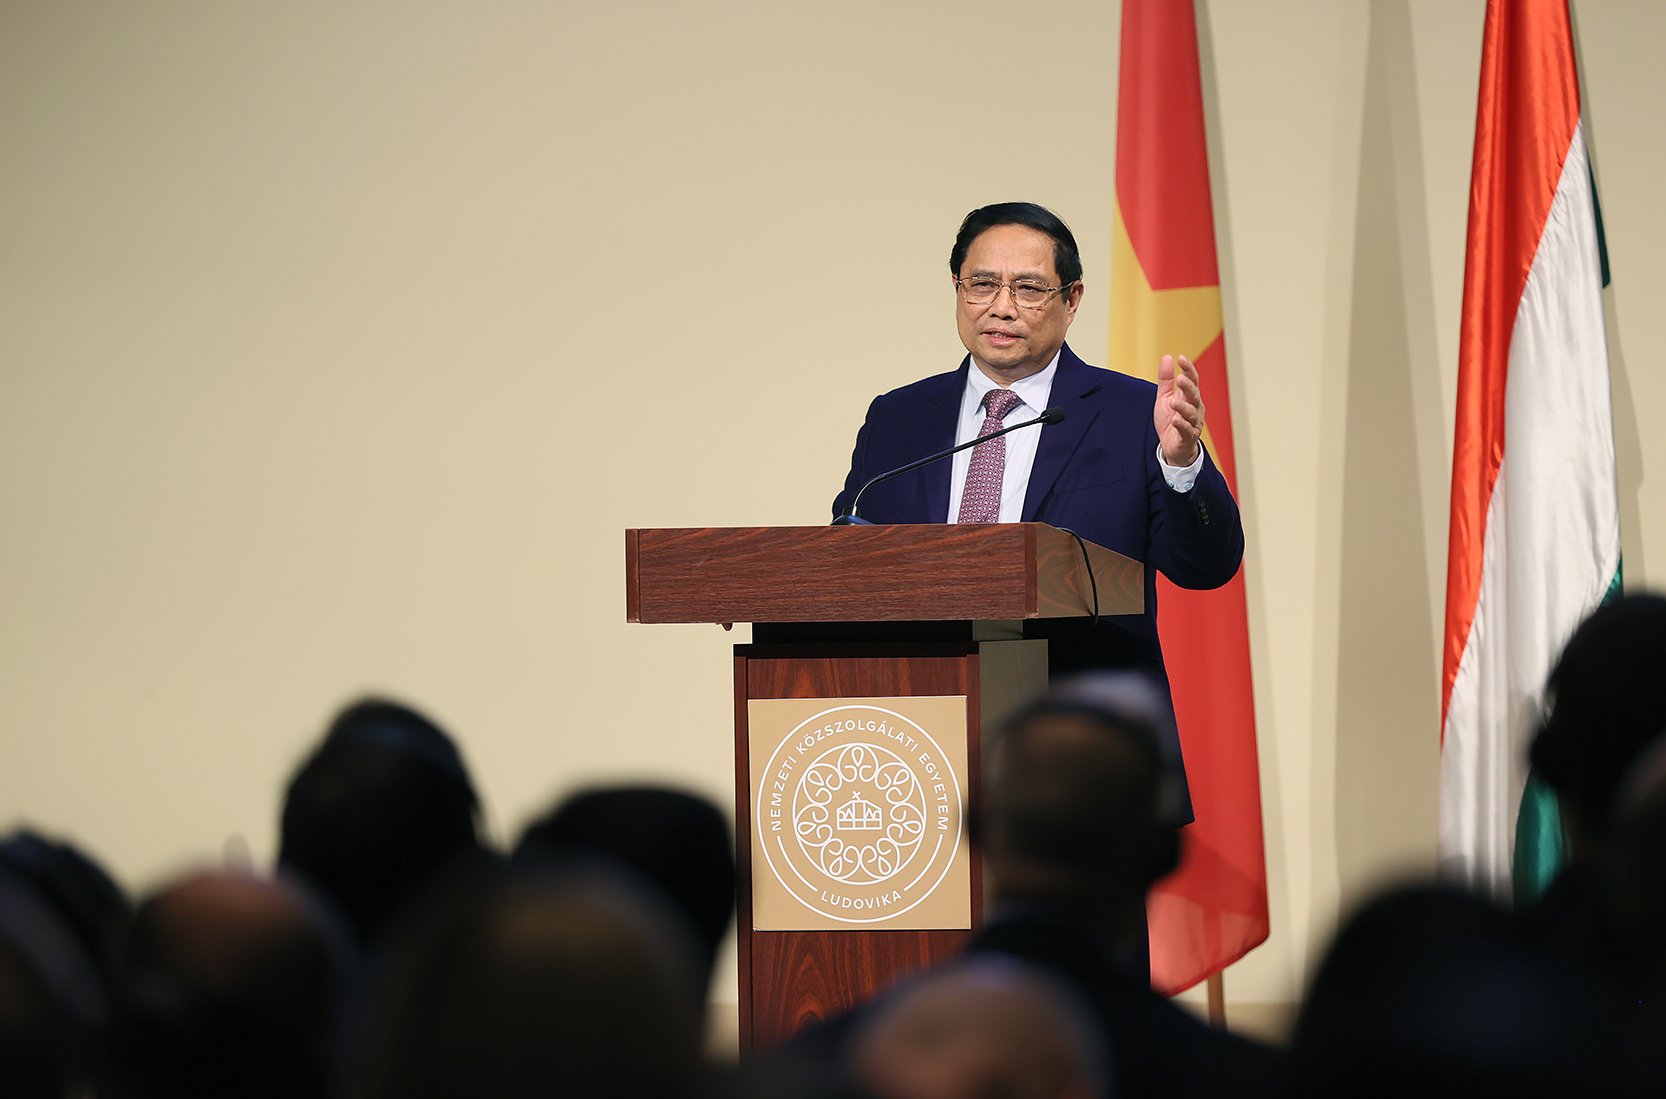 Thủ tướng Phạm Minh Chính phát biểu tại Diễn đàn doanh nghiệp Việt Nam-Hungary - Ảnh: VGP/Nhật Bắc